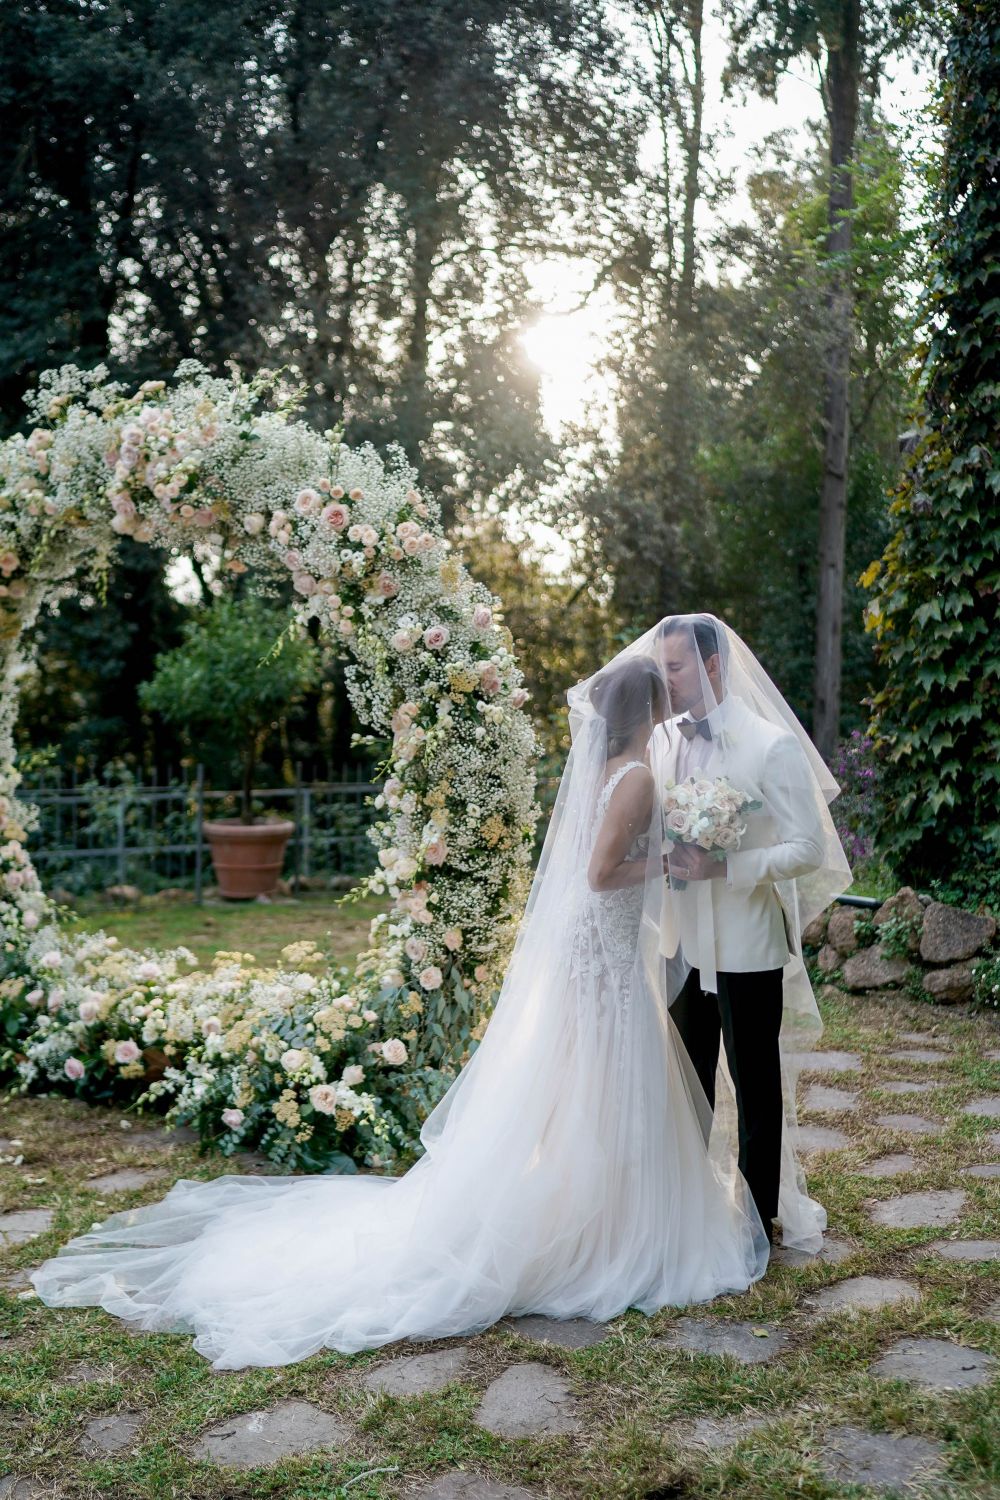 Принцесса Беатрис официально отменила свадьбу с Эдоардо Мапелли ...